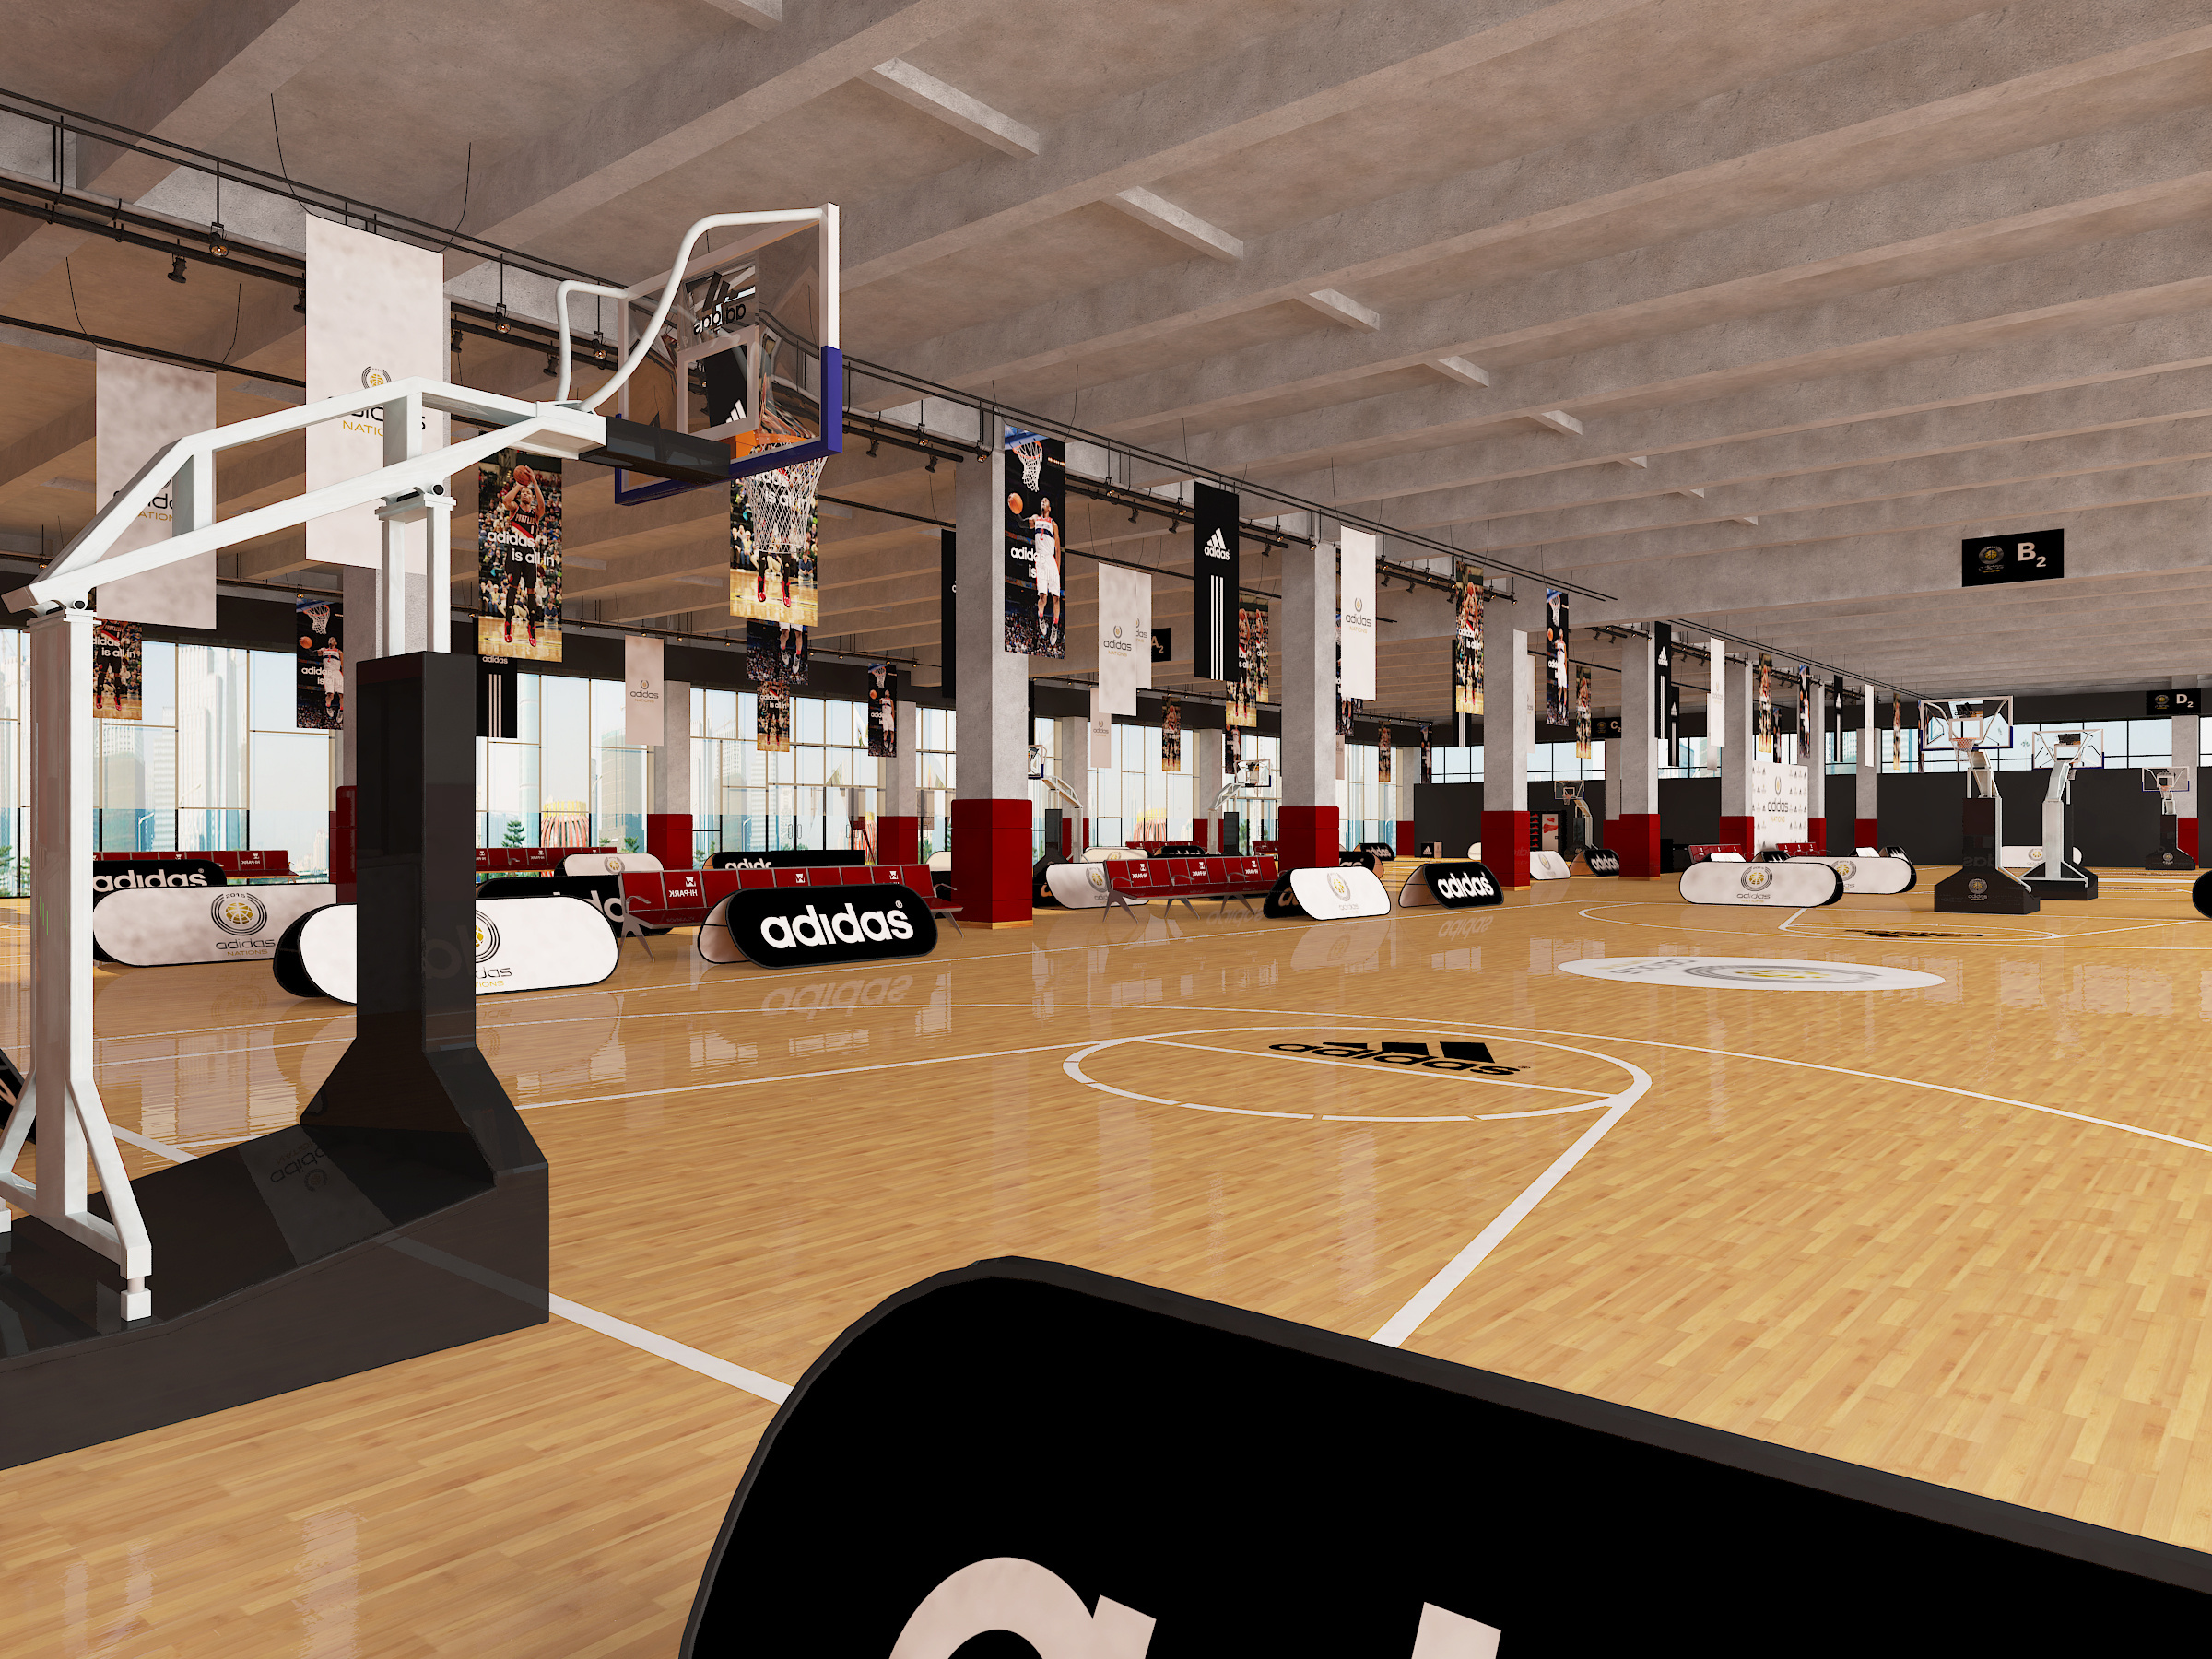 现代NBA篮球场体育馆3d模型下载-3dmax模型免费下载-欧模网